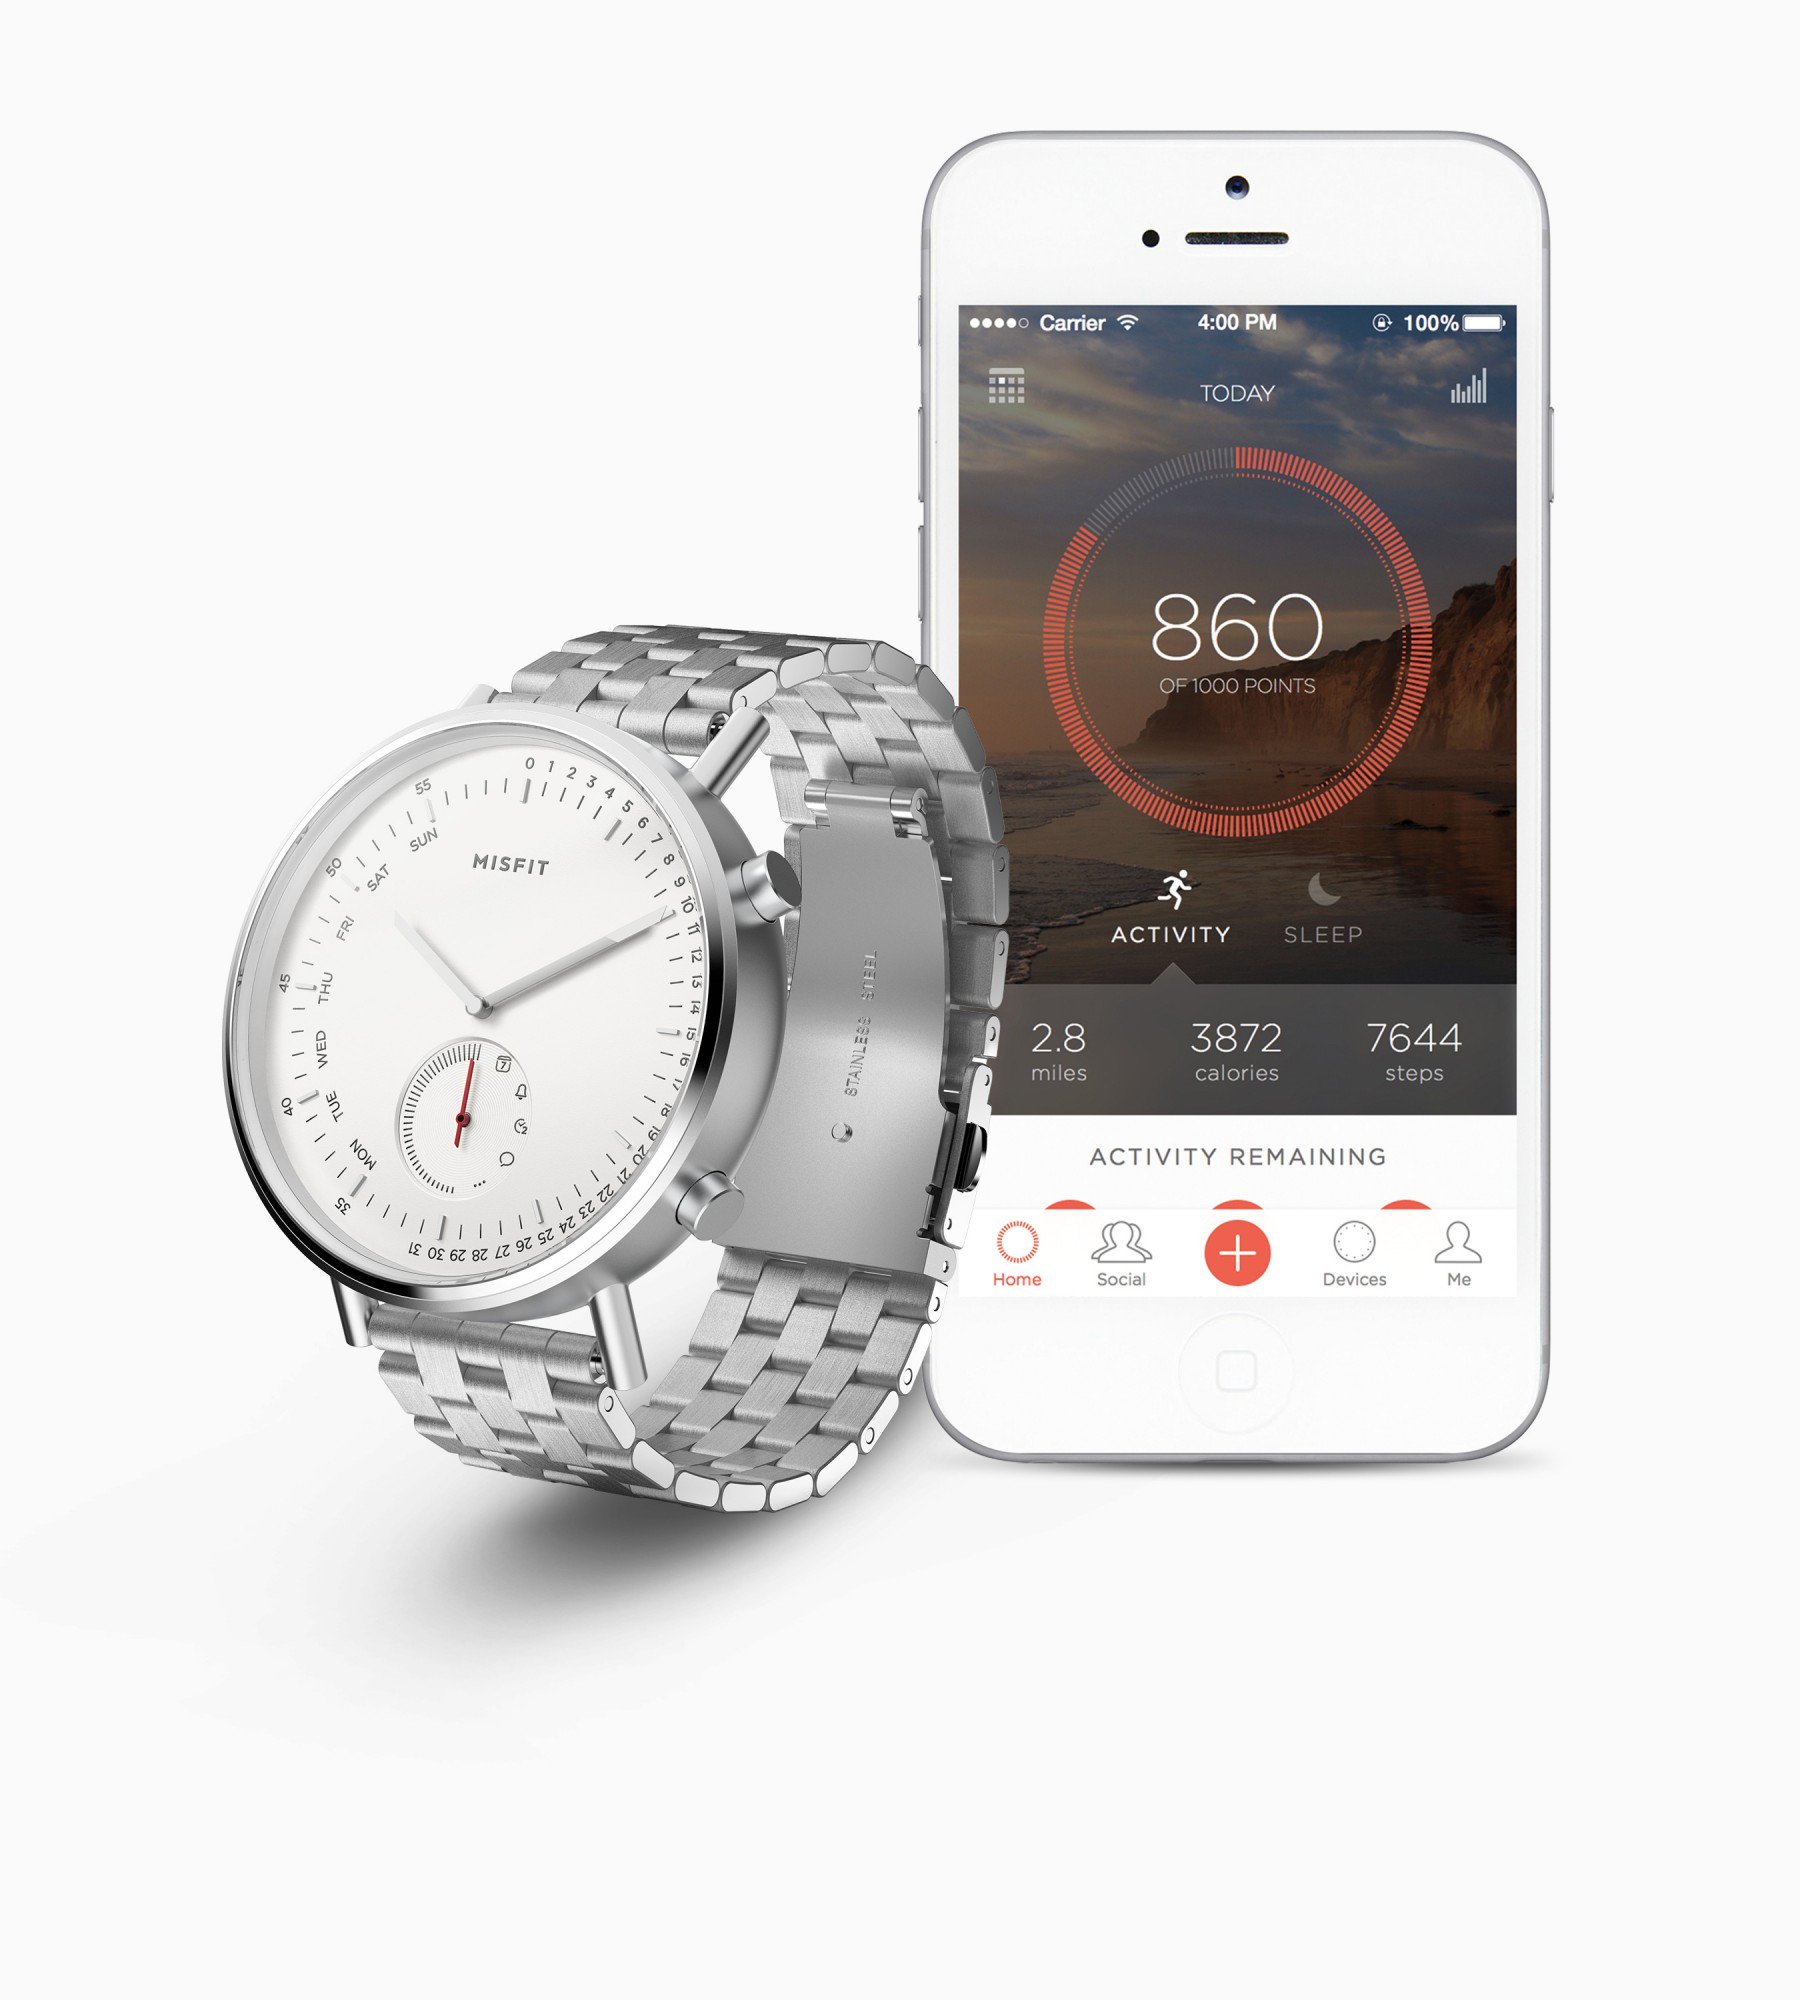 Misfit Command là
đồng hồ lai có thể theo dõi sức khỏe
và nhận thông báo, giá 149 USD